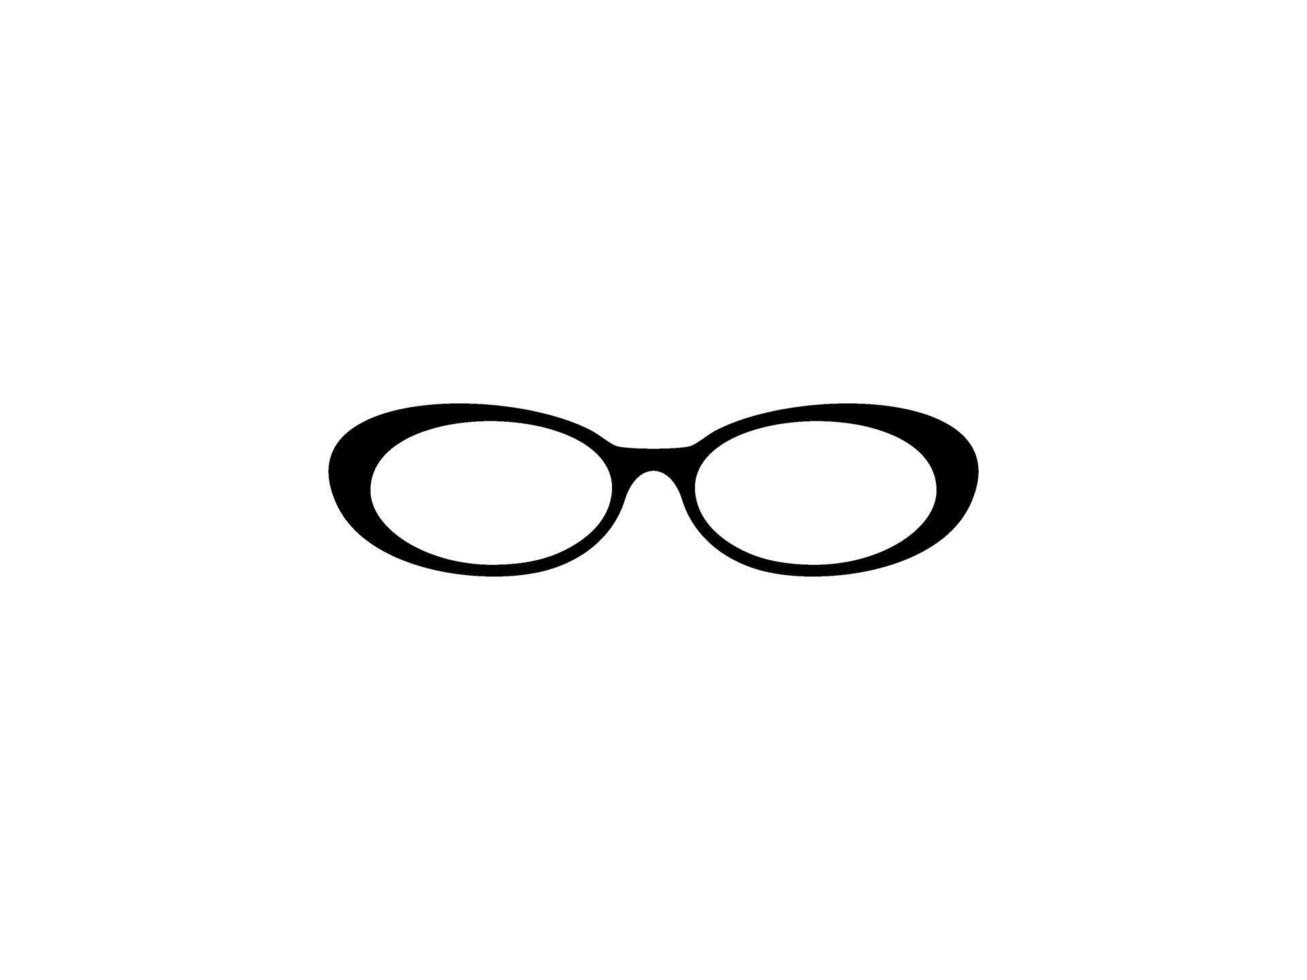 Auge Brille Silhouette, Vorderseite Sicht, eben Stil, können verwenden zum Piktogramm, Logo Gramm, Apps, Kunst Illustration, Vorlage zum Benutzerbild Profil Bild, Webseite, oder Grafik Design Element. Vektor Illustration